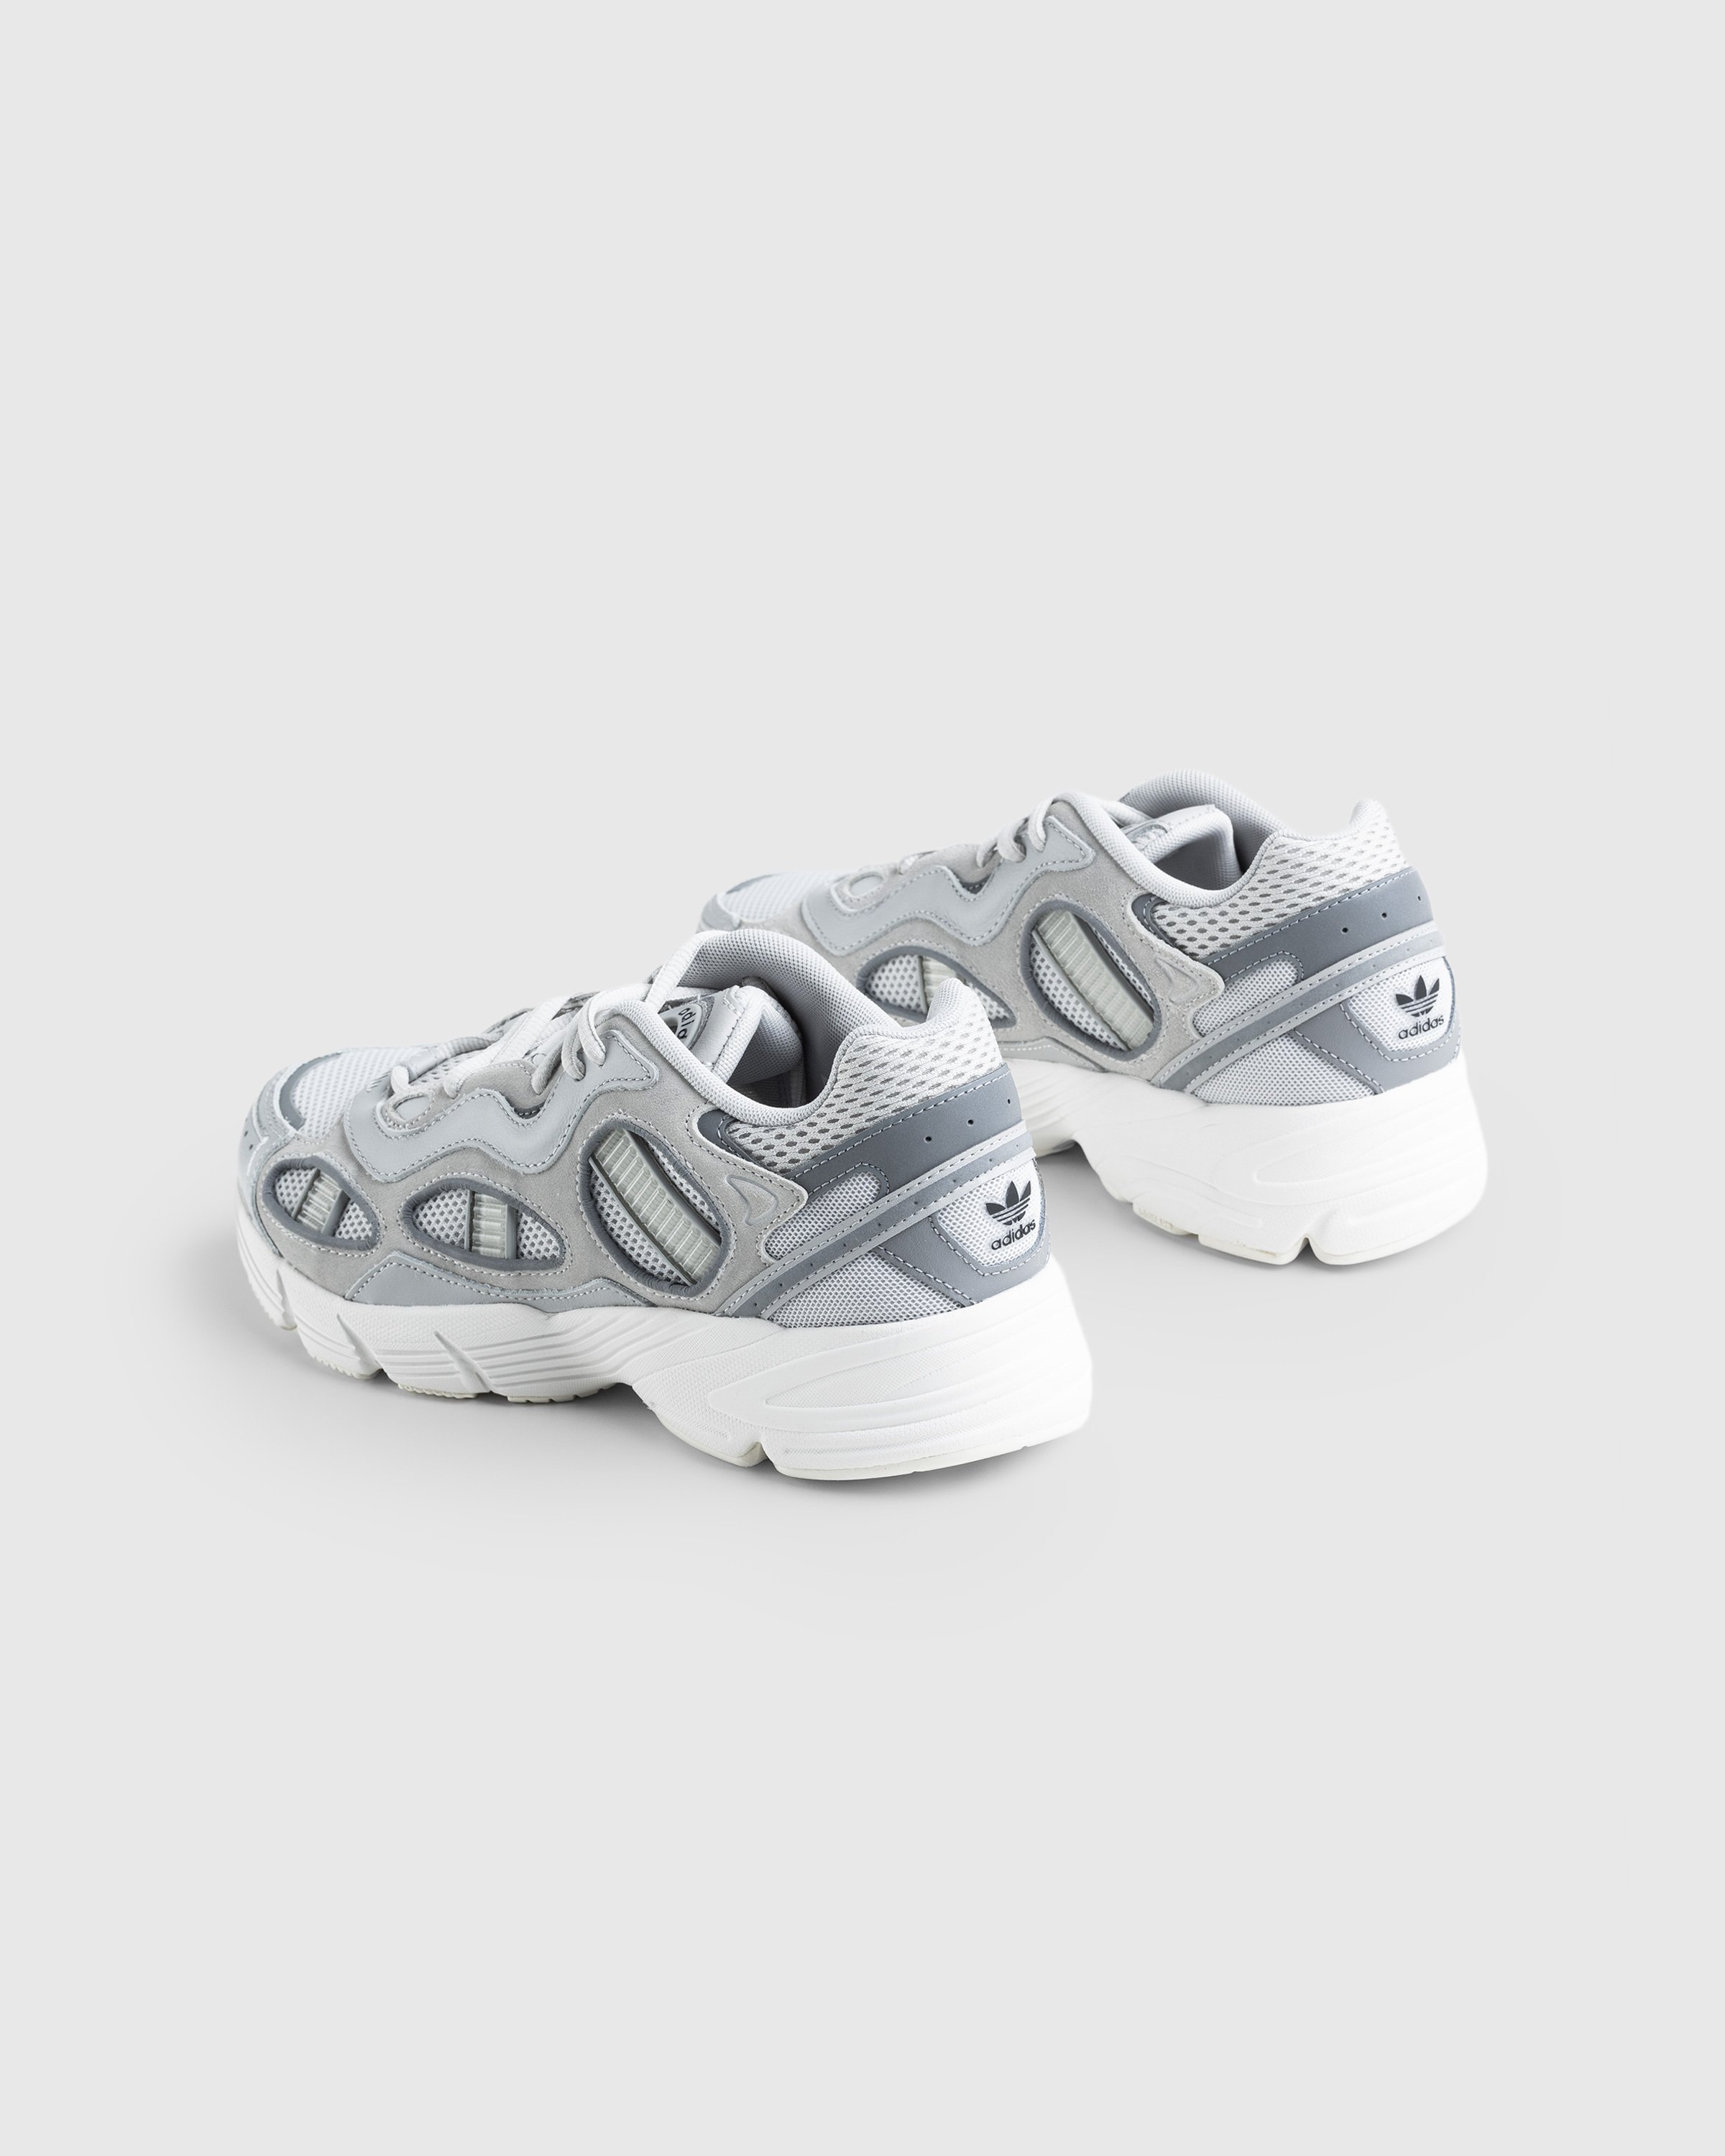 Adidas - Astir Sn Grey - Footwear - Grey - Image 4